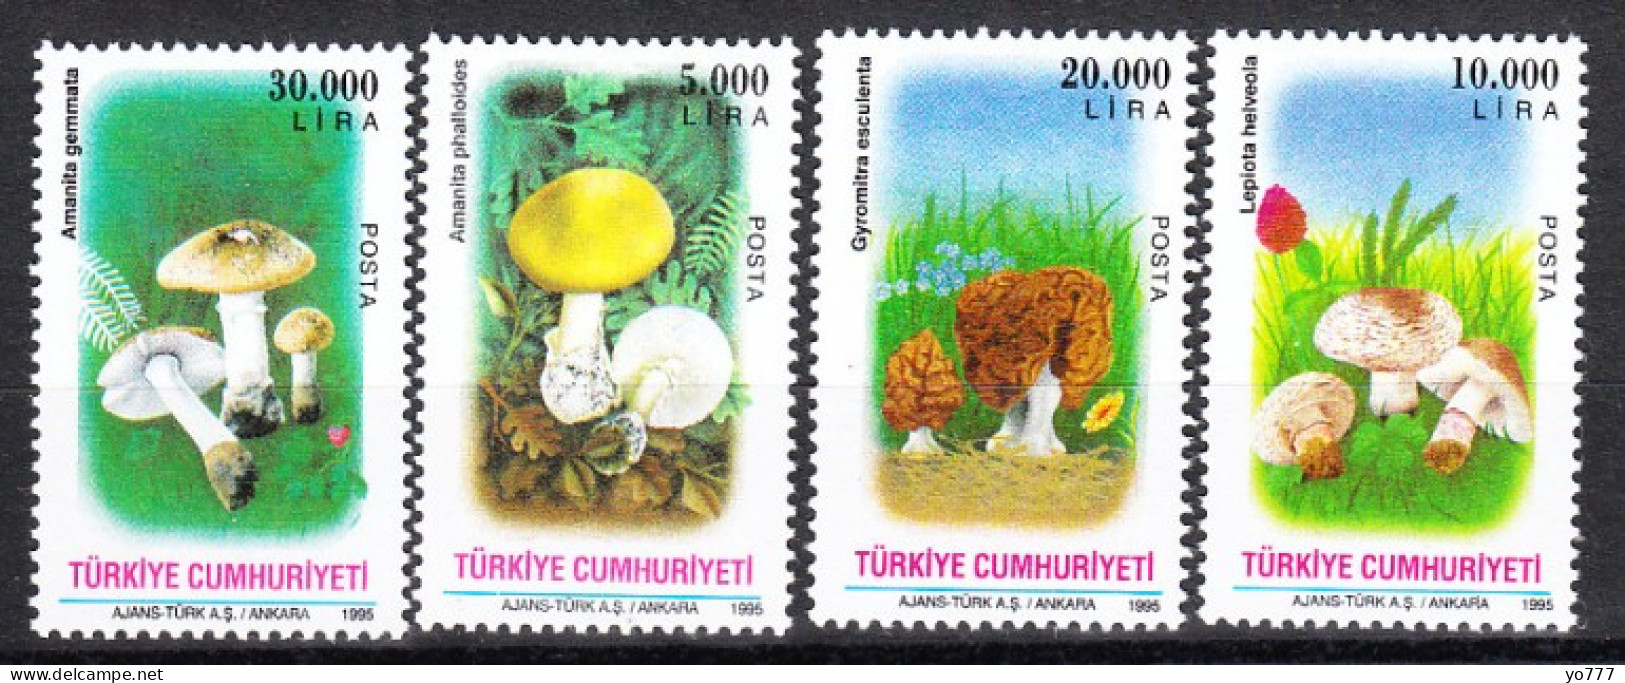 (3064-66) TURKEY MUSHROOMS MNH** - Unused Stamps